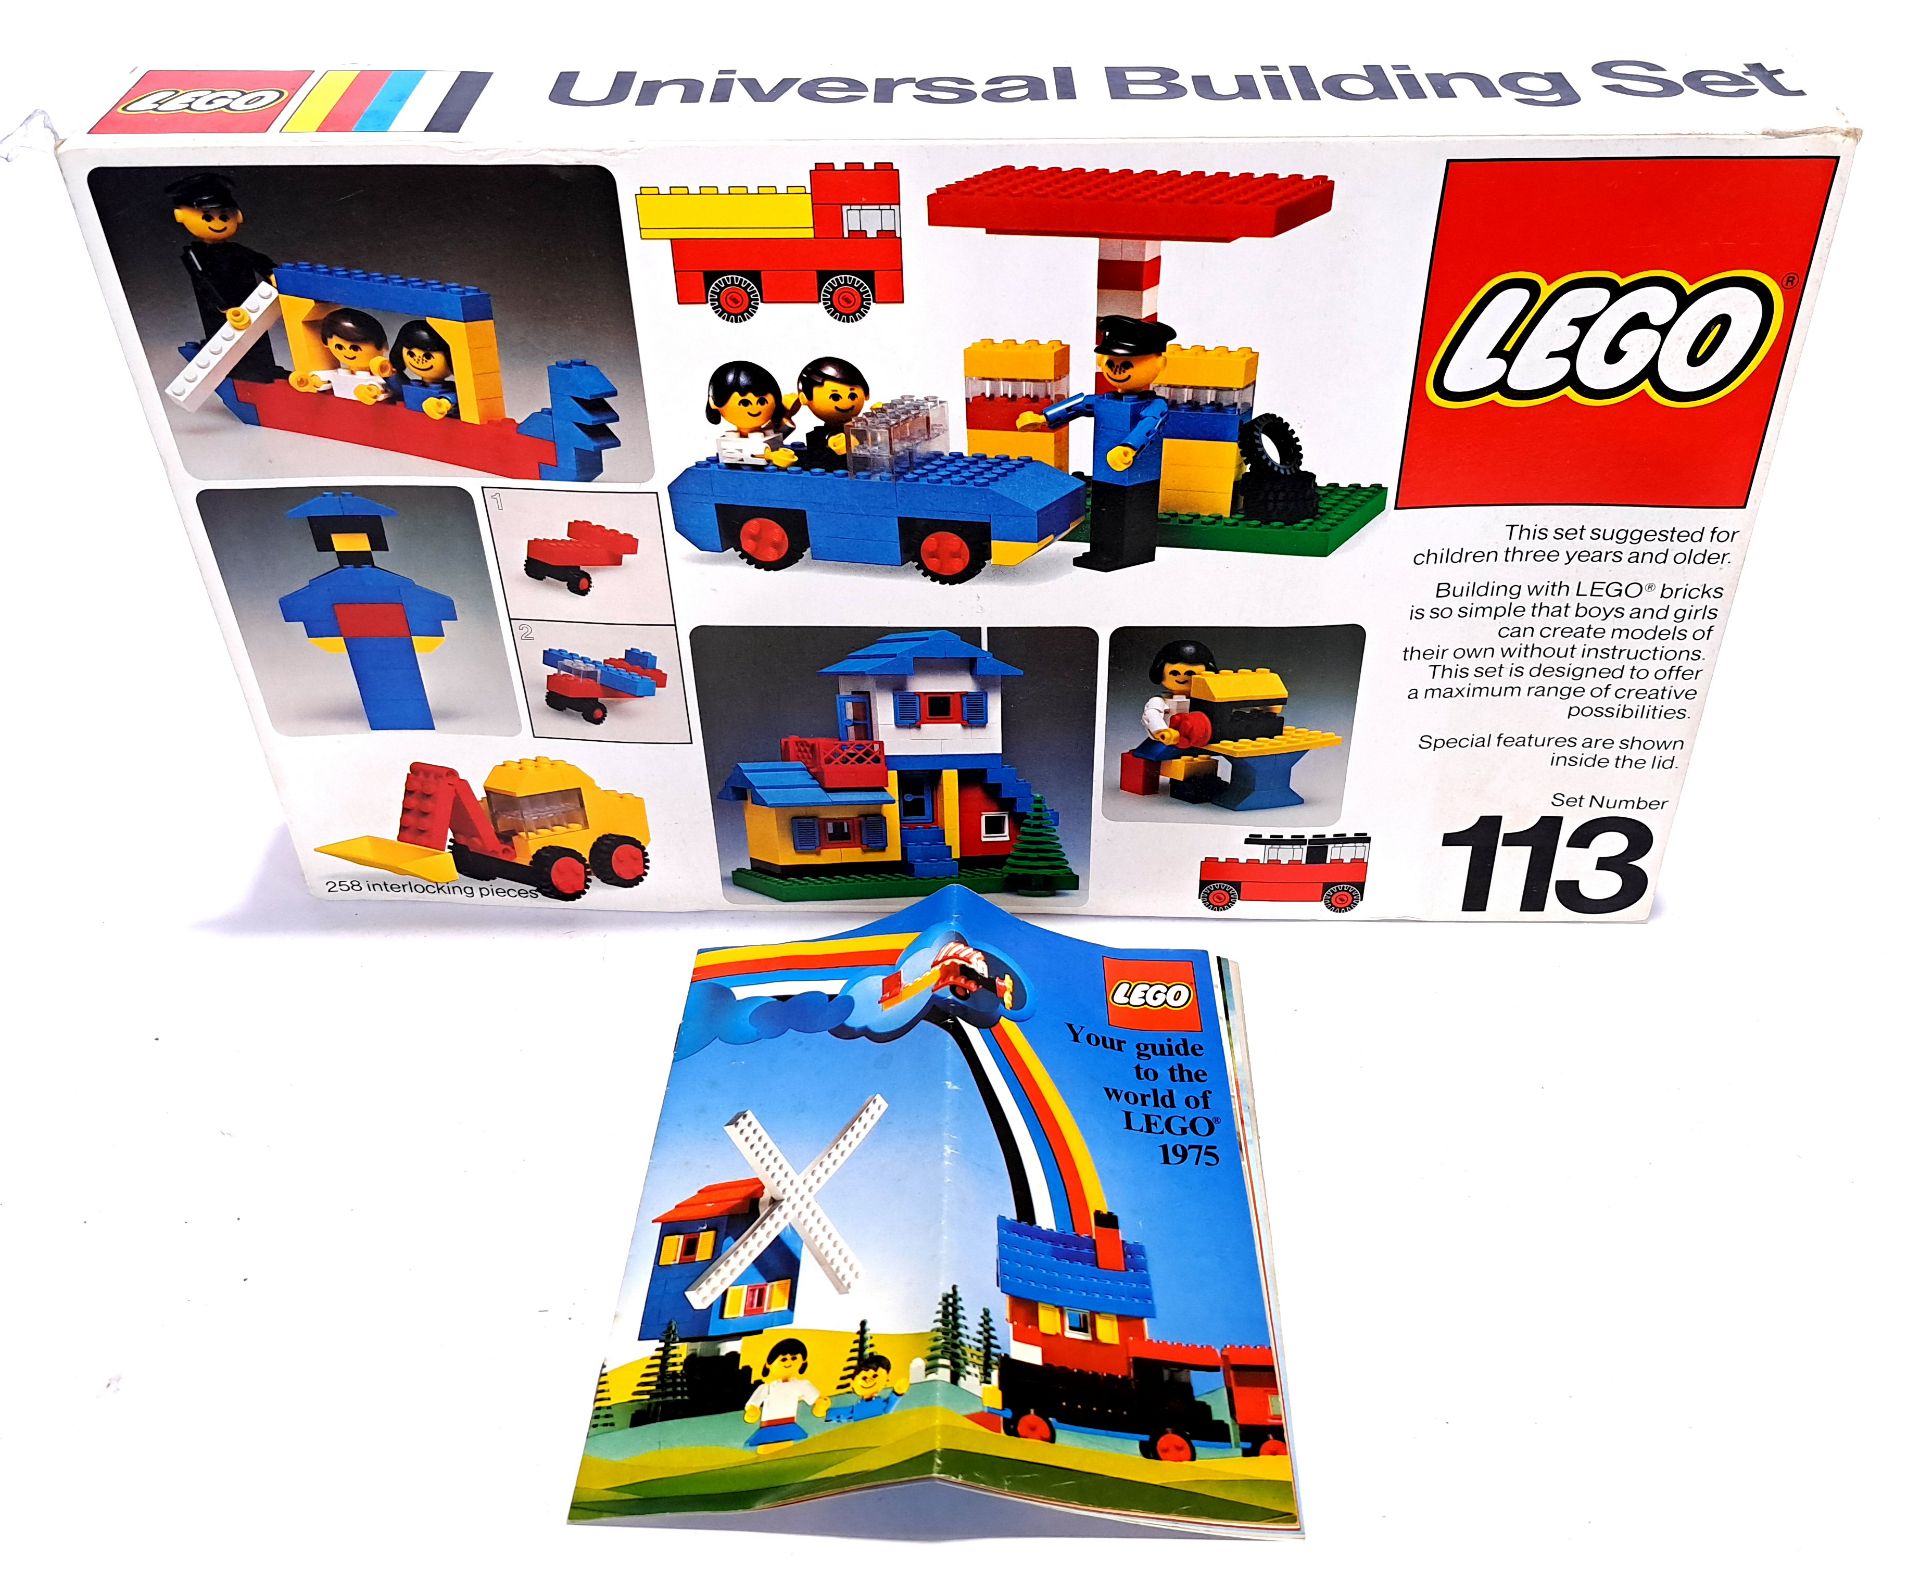 Vintage Lego set 113 Universal Building Set